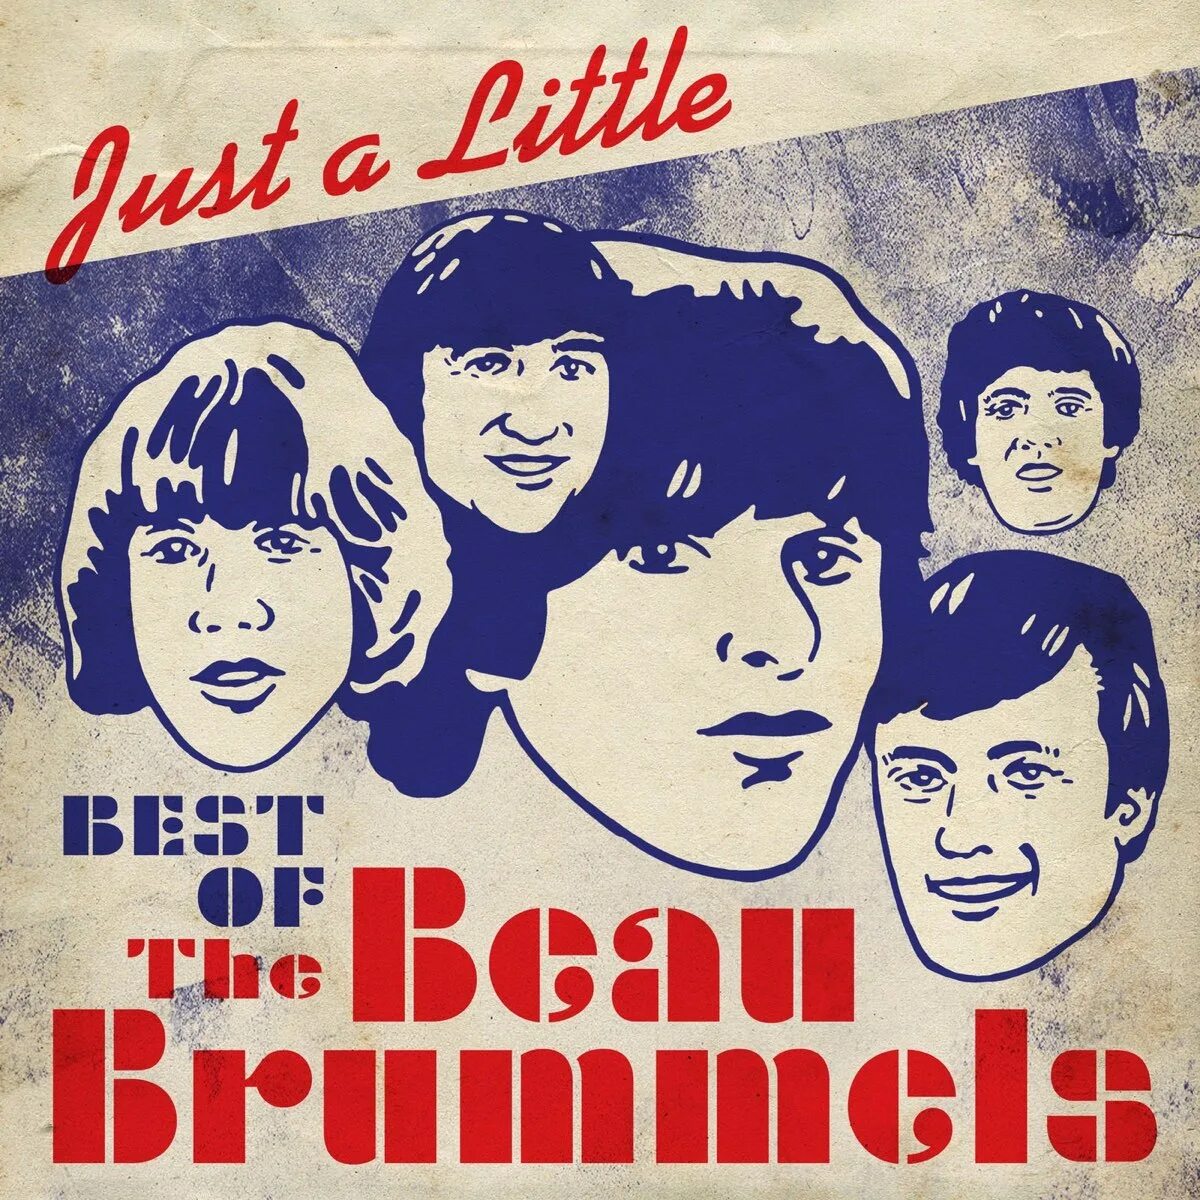 Little best. The beau Brummels. The-beau-Brummels-the-beau-Brummels-Volume-2-1965. Beau Brummels - Introducing the beau Brummels 1965. The beau Brummels - 1967 - Triangle.